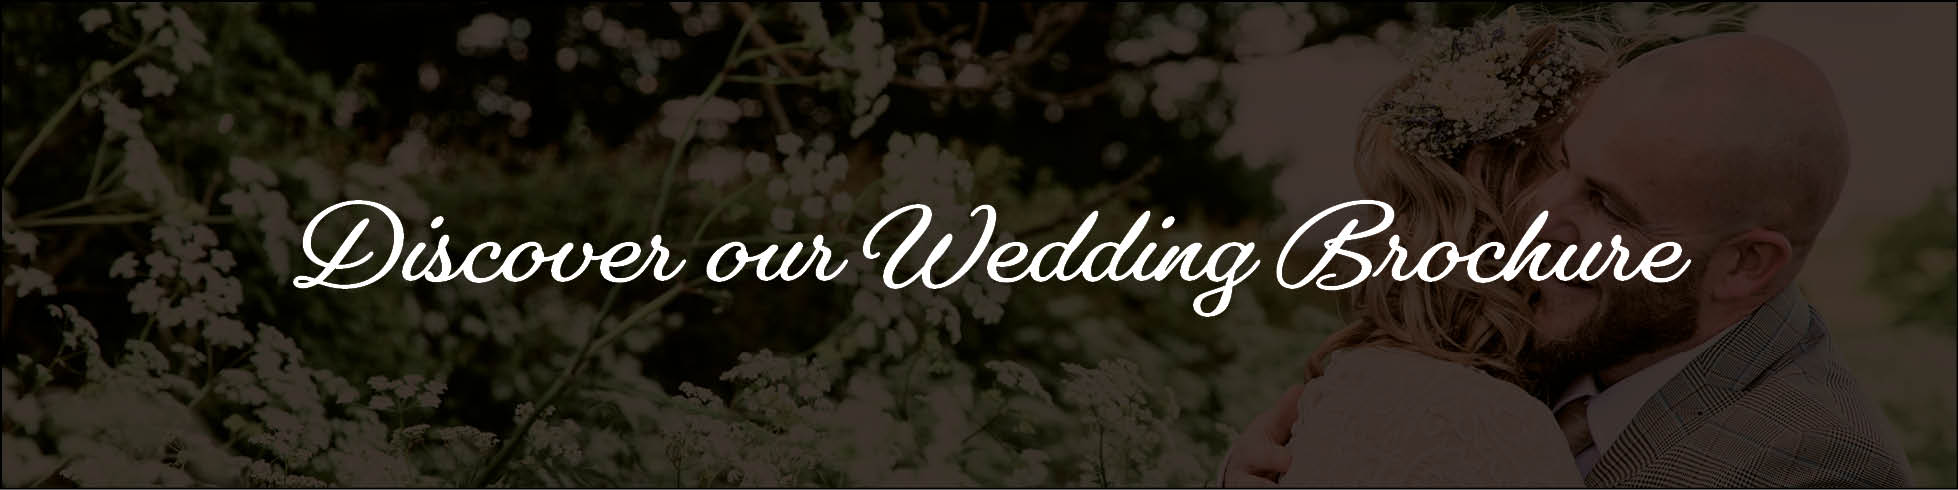 Request a Gretna Green Wedding Brochure